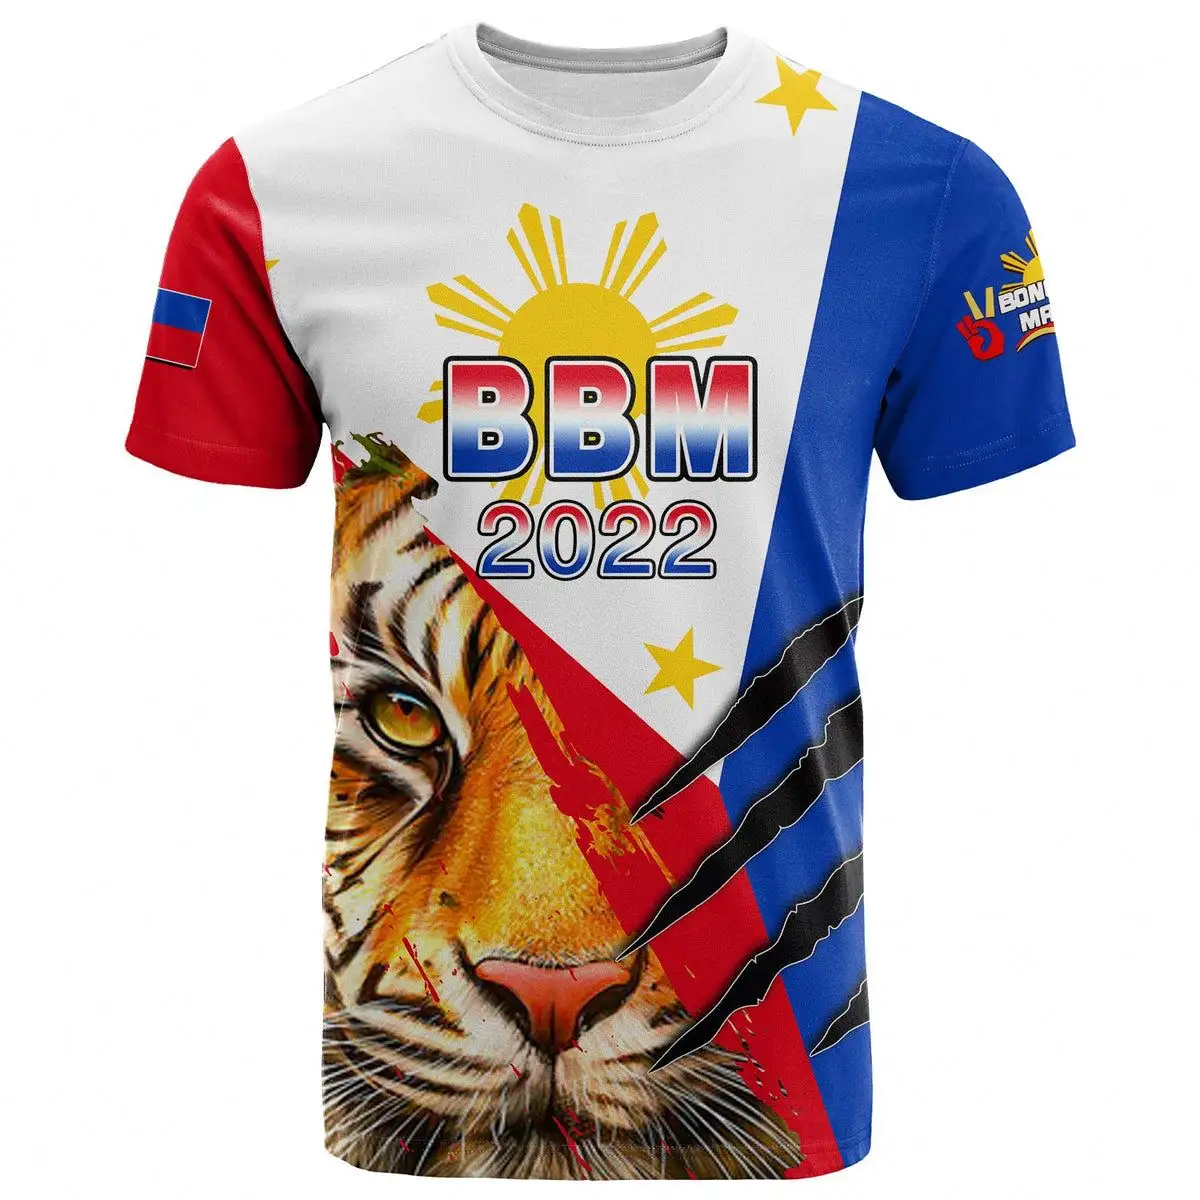 Camiseta personalizada con estampado de Filipinas BBM 2022 Tiger Of The North Summer Casual Oversize camiseta para hombres camisetas lisas a granel